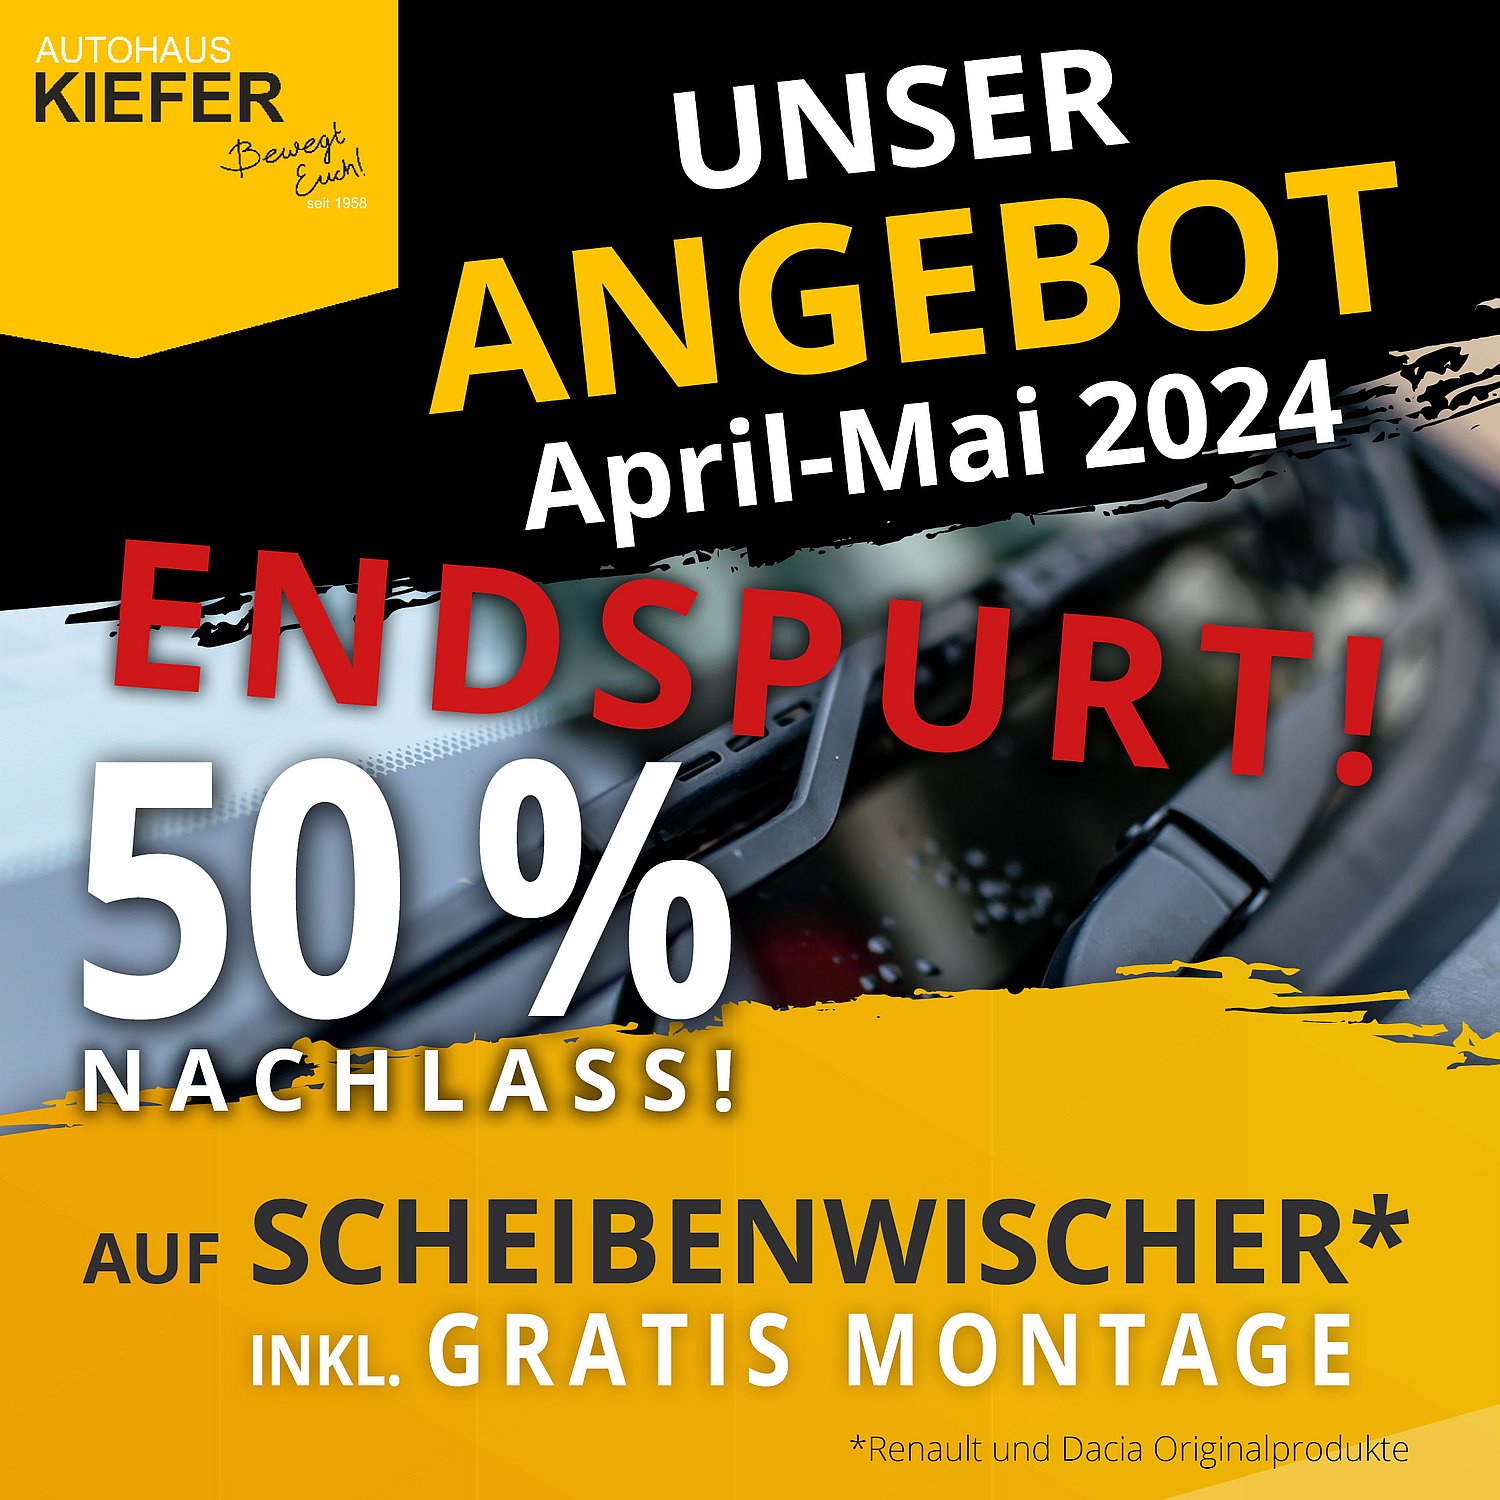 Autohaus Kiefer- Hinweis auf Entspurt 50 % Aktion Scheibenwischer